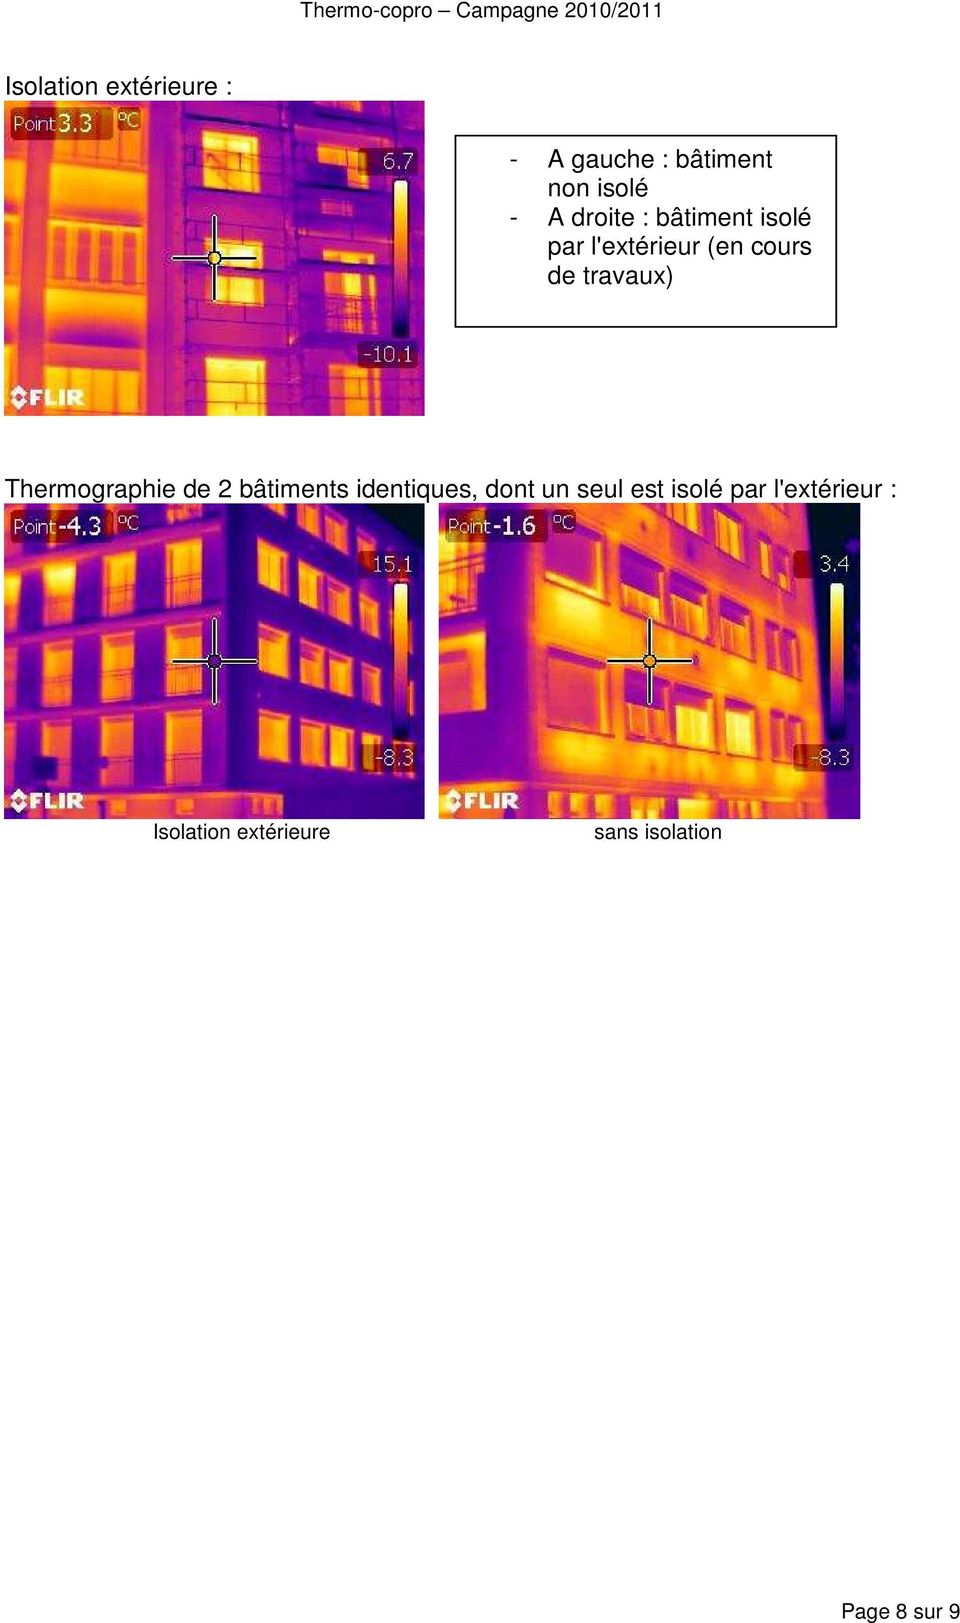 Thermographie de 2 bâtiments identiques, dont un seul est